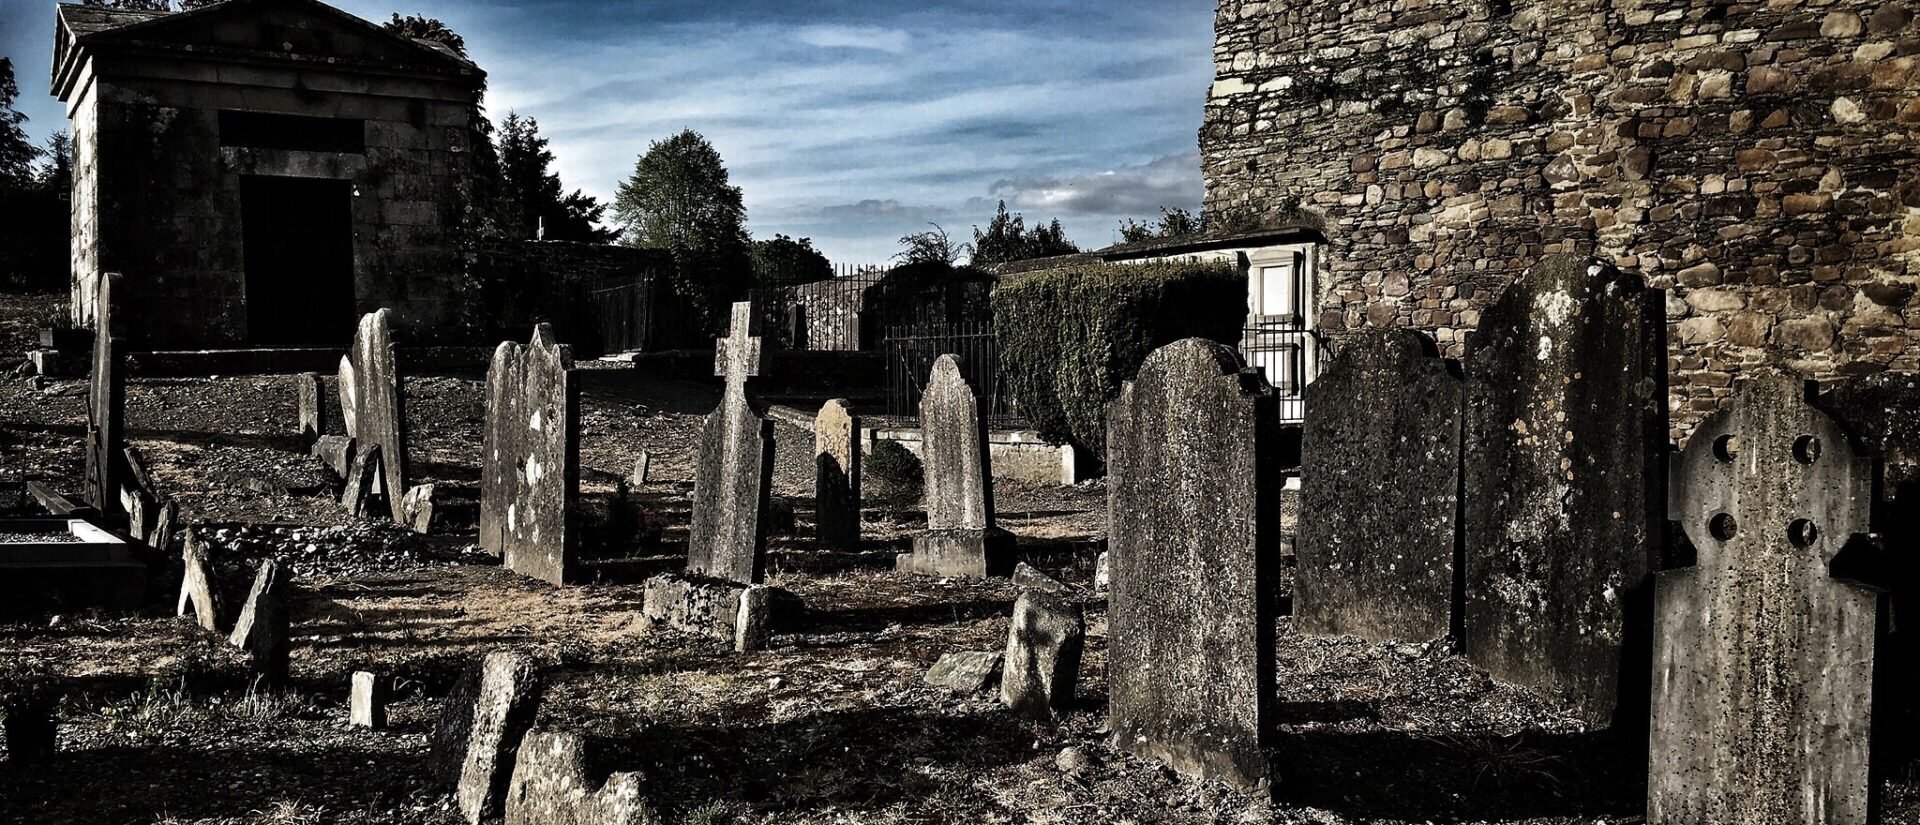 Le grand nombre de décès de prêtres et de religieux ces dernières années affecte l'Eglise irlandaise | photo: cimetière en Irlande © Bill Green/Flickr/CC BY-NC 2.0